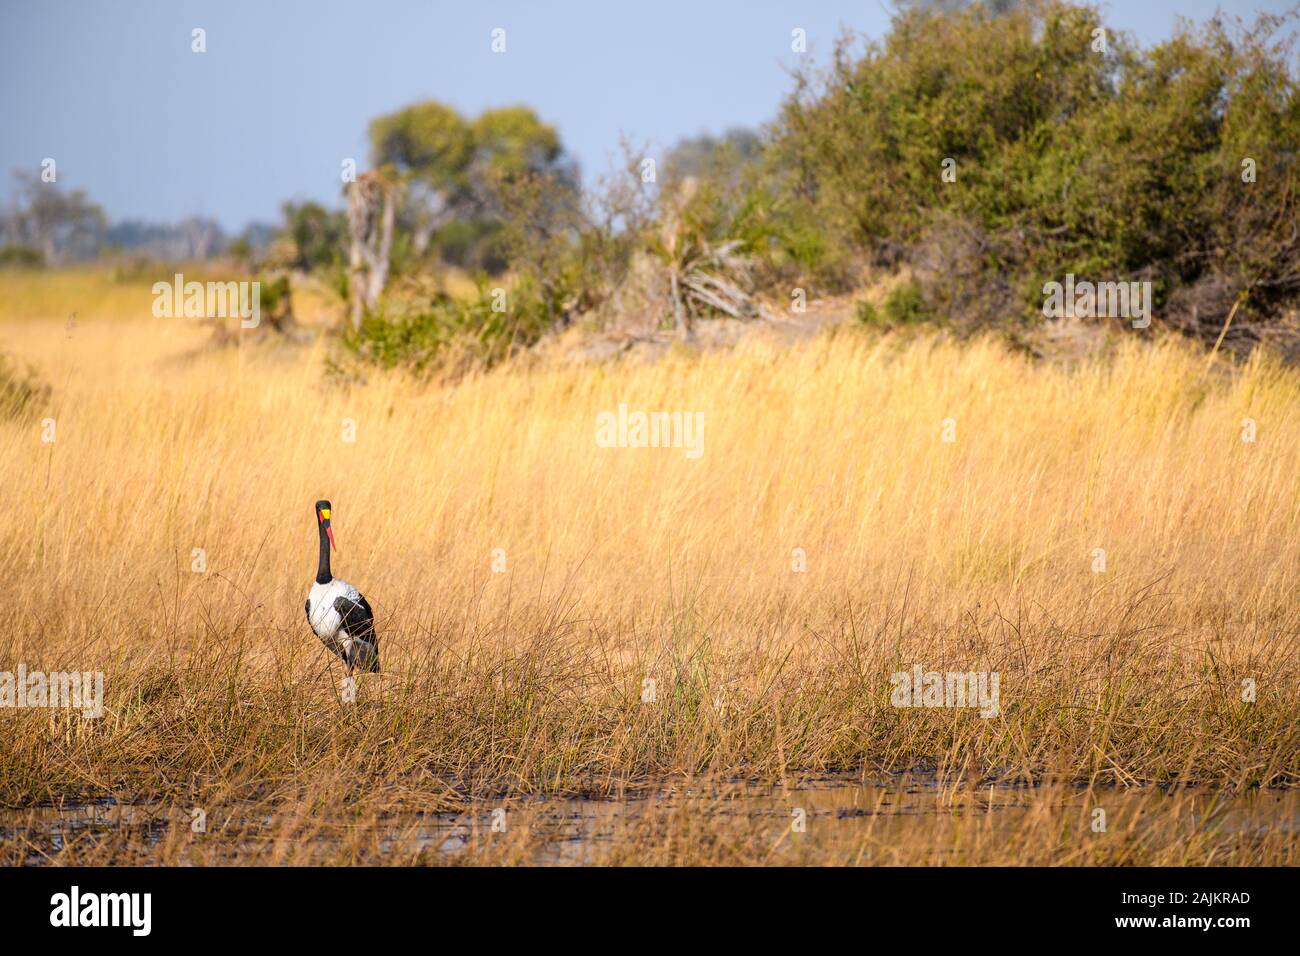 Stork À Piqûre De Selle, Éphippiorhynchus Senegalensis, Plaines De Bushman, Delta D'Okavanago, Botswana Banque D'Images